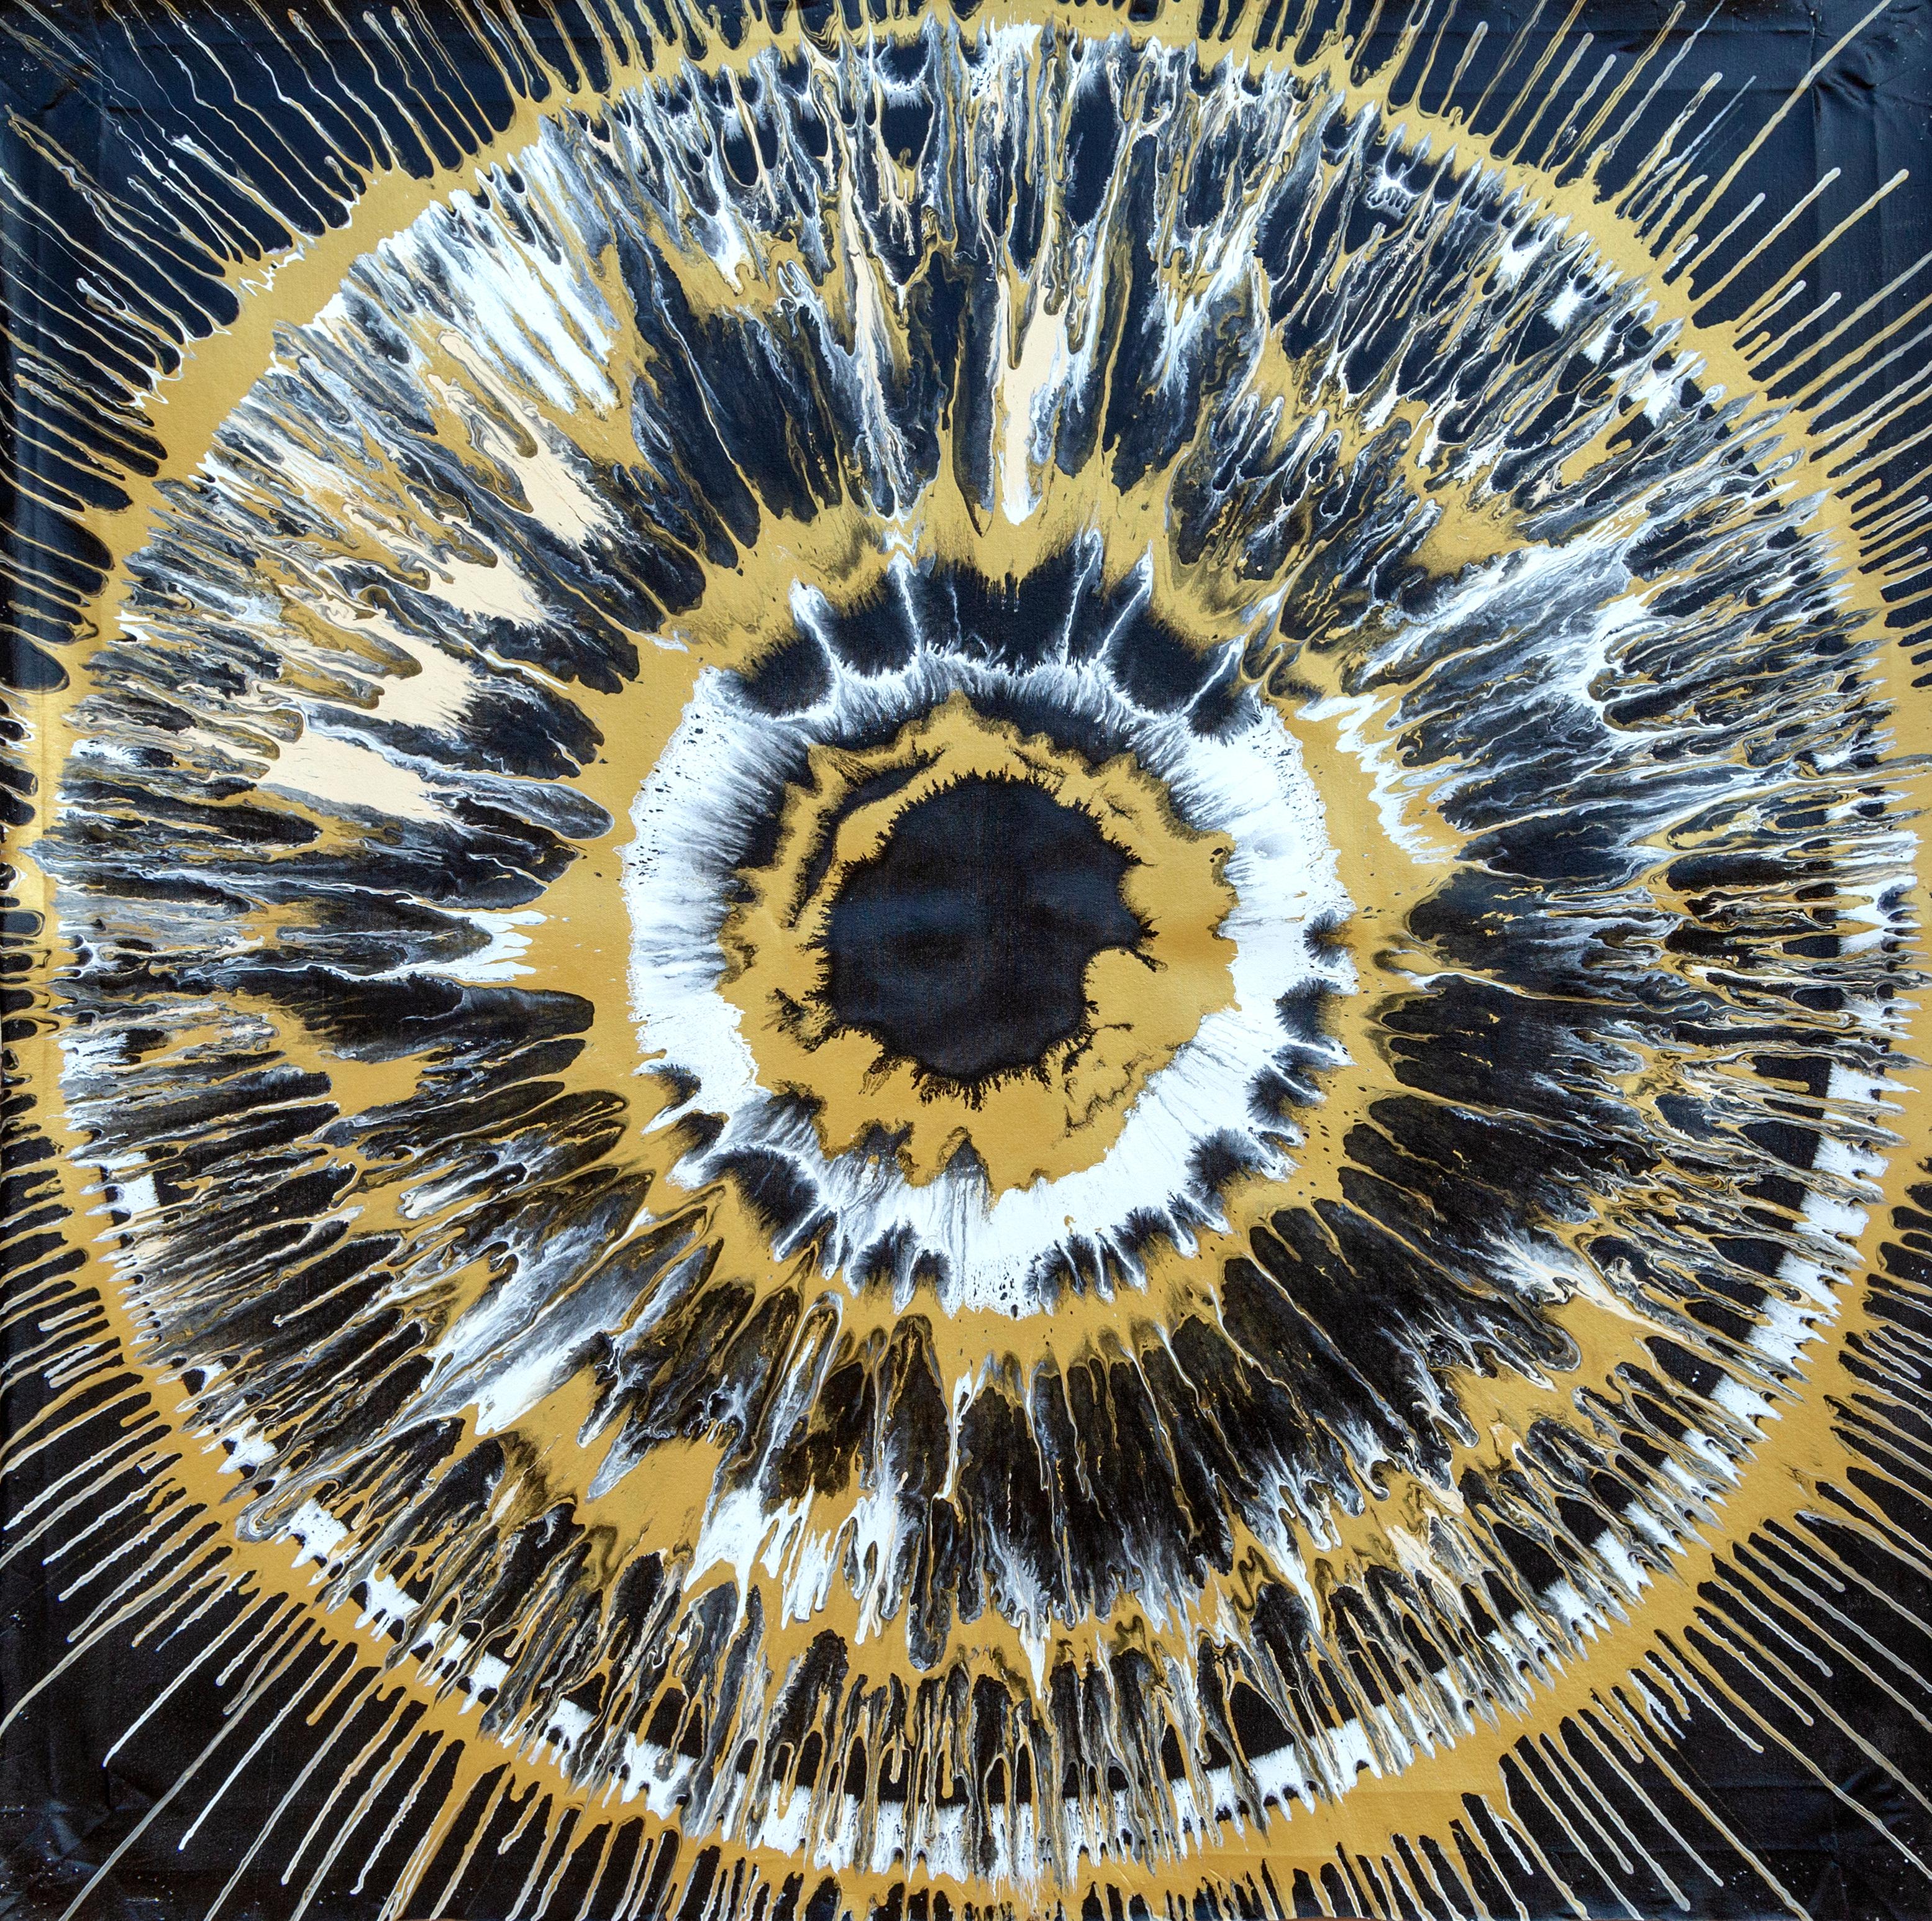 L'œil de tigre, grande peinture expressionniste abstraite de William Hewes